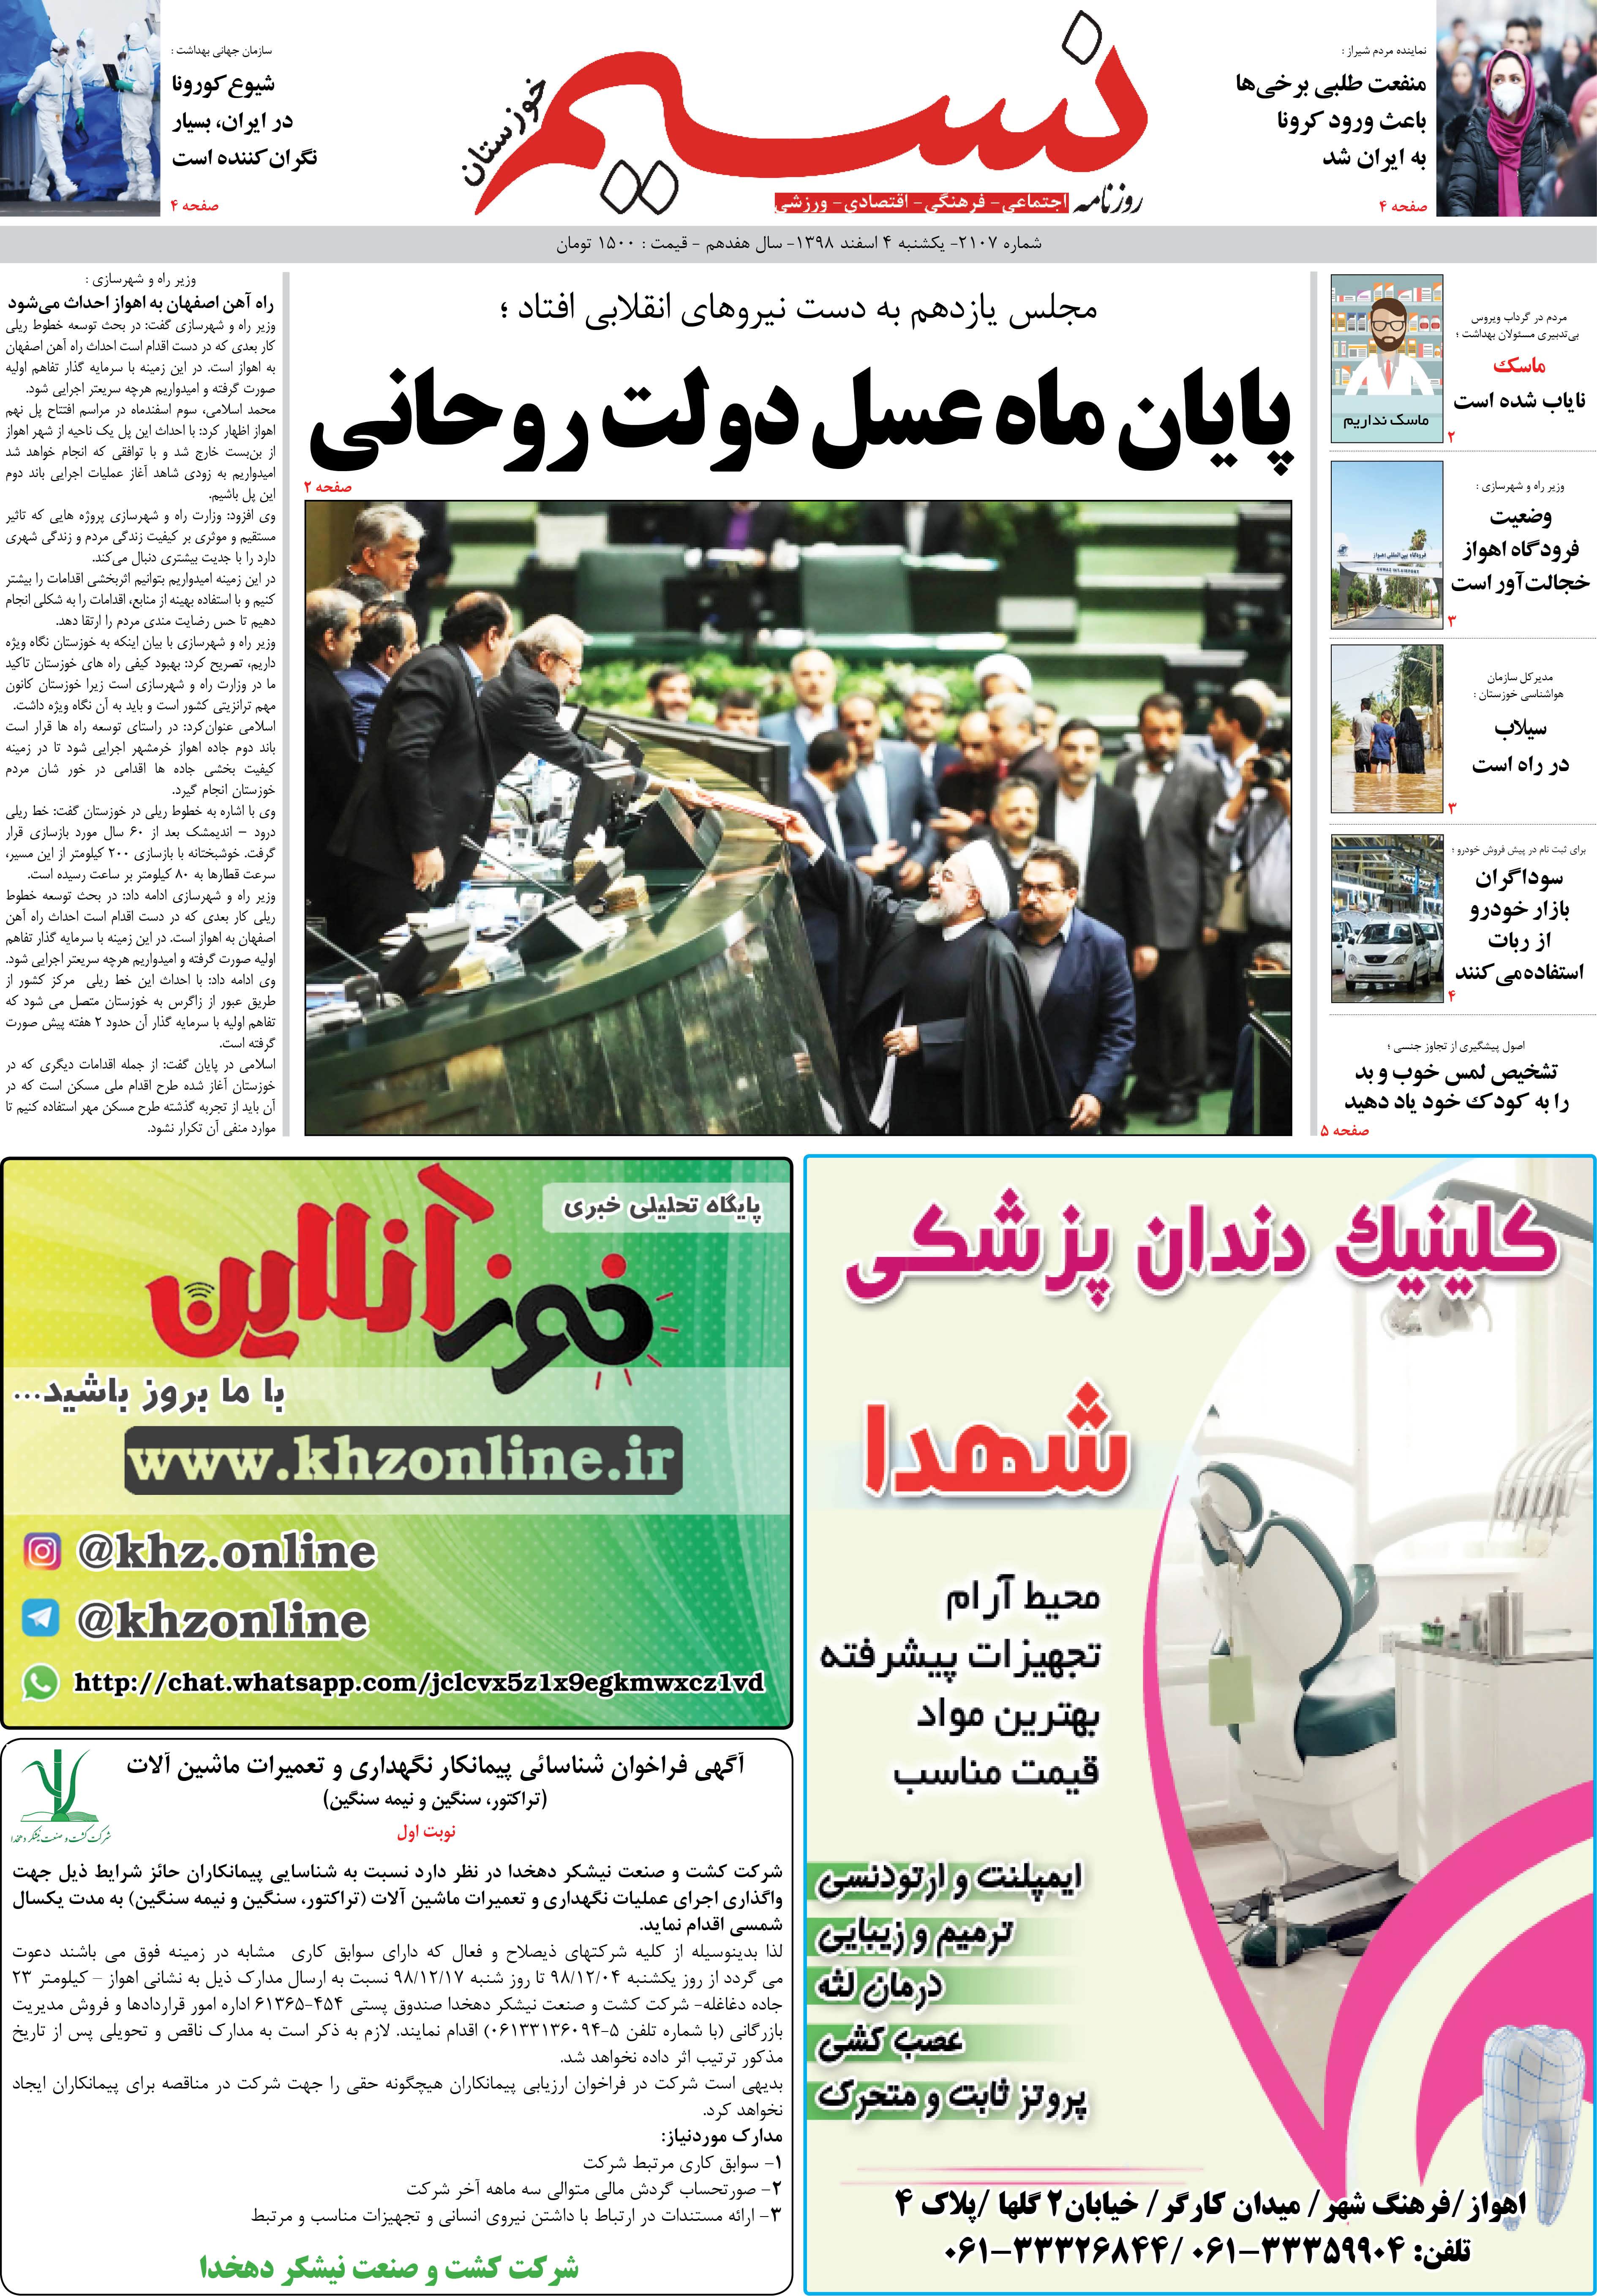 صفحه اصلی روزنامه نسیم شماره 2107 